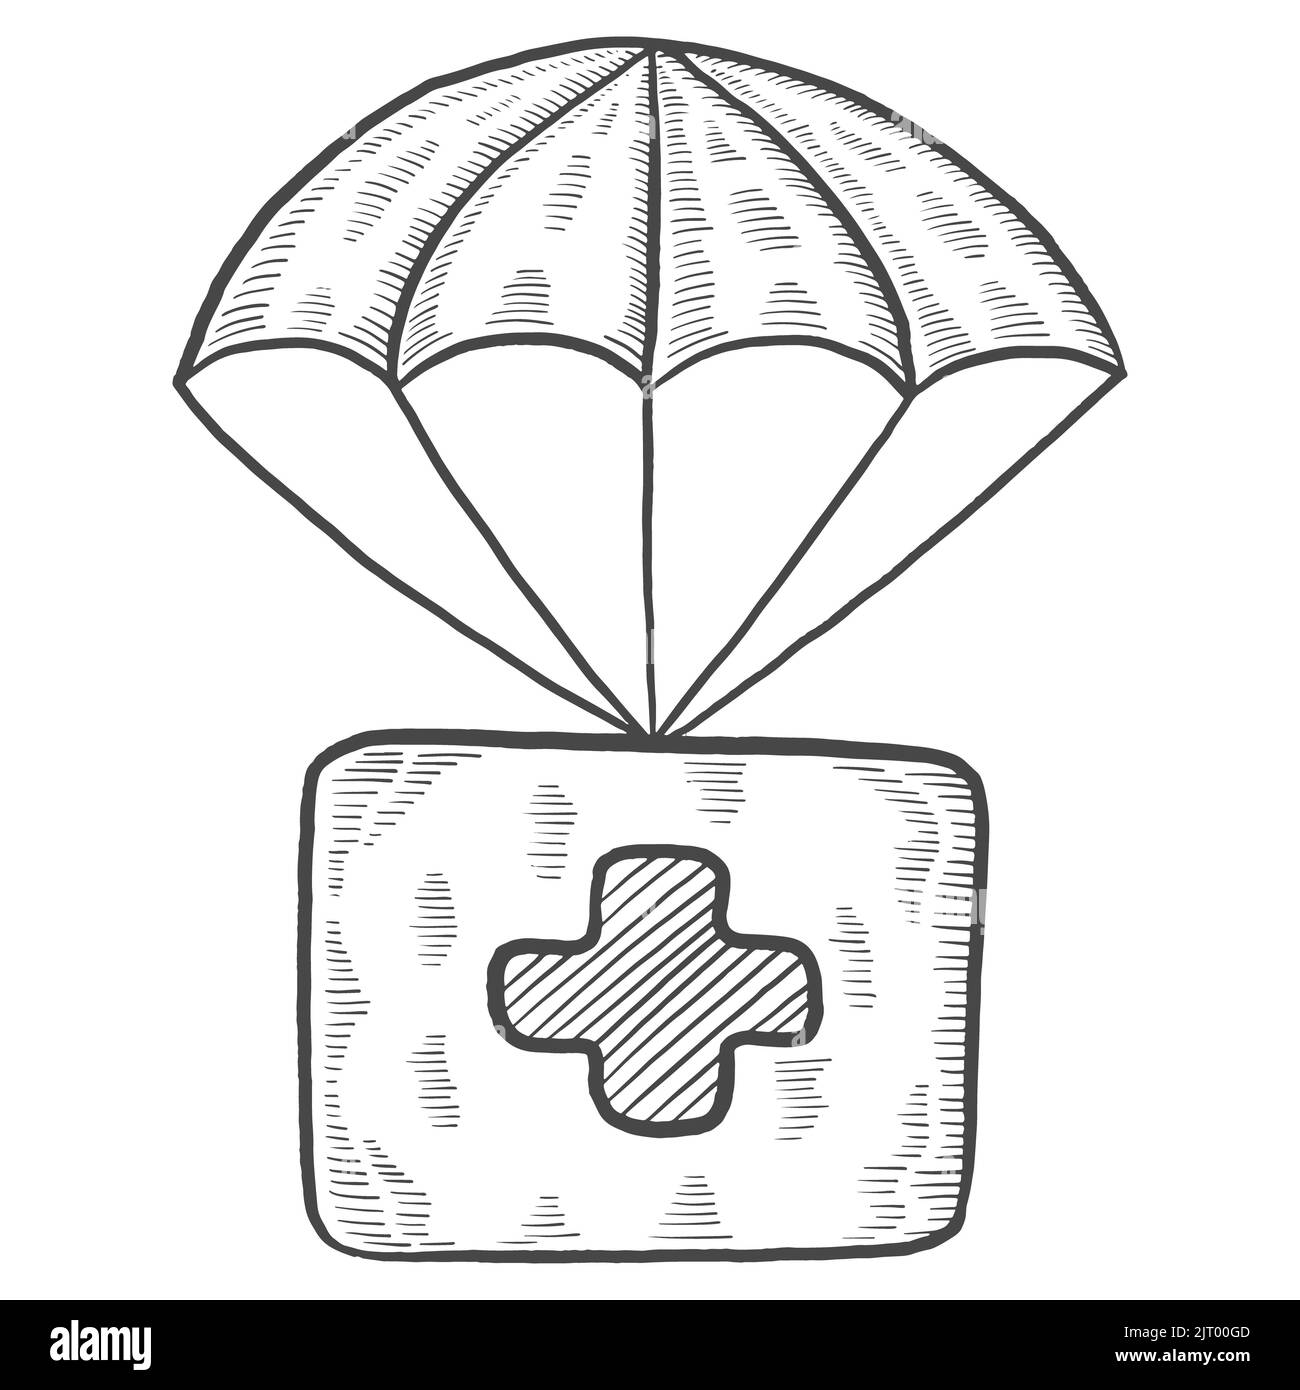 soins de santé parachute boîte de charité humanitaire international jour isolé doodle dessin dessiné à la main avec illustration vectorielle style vecteur Banque D'Images